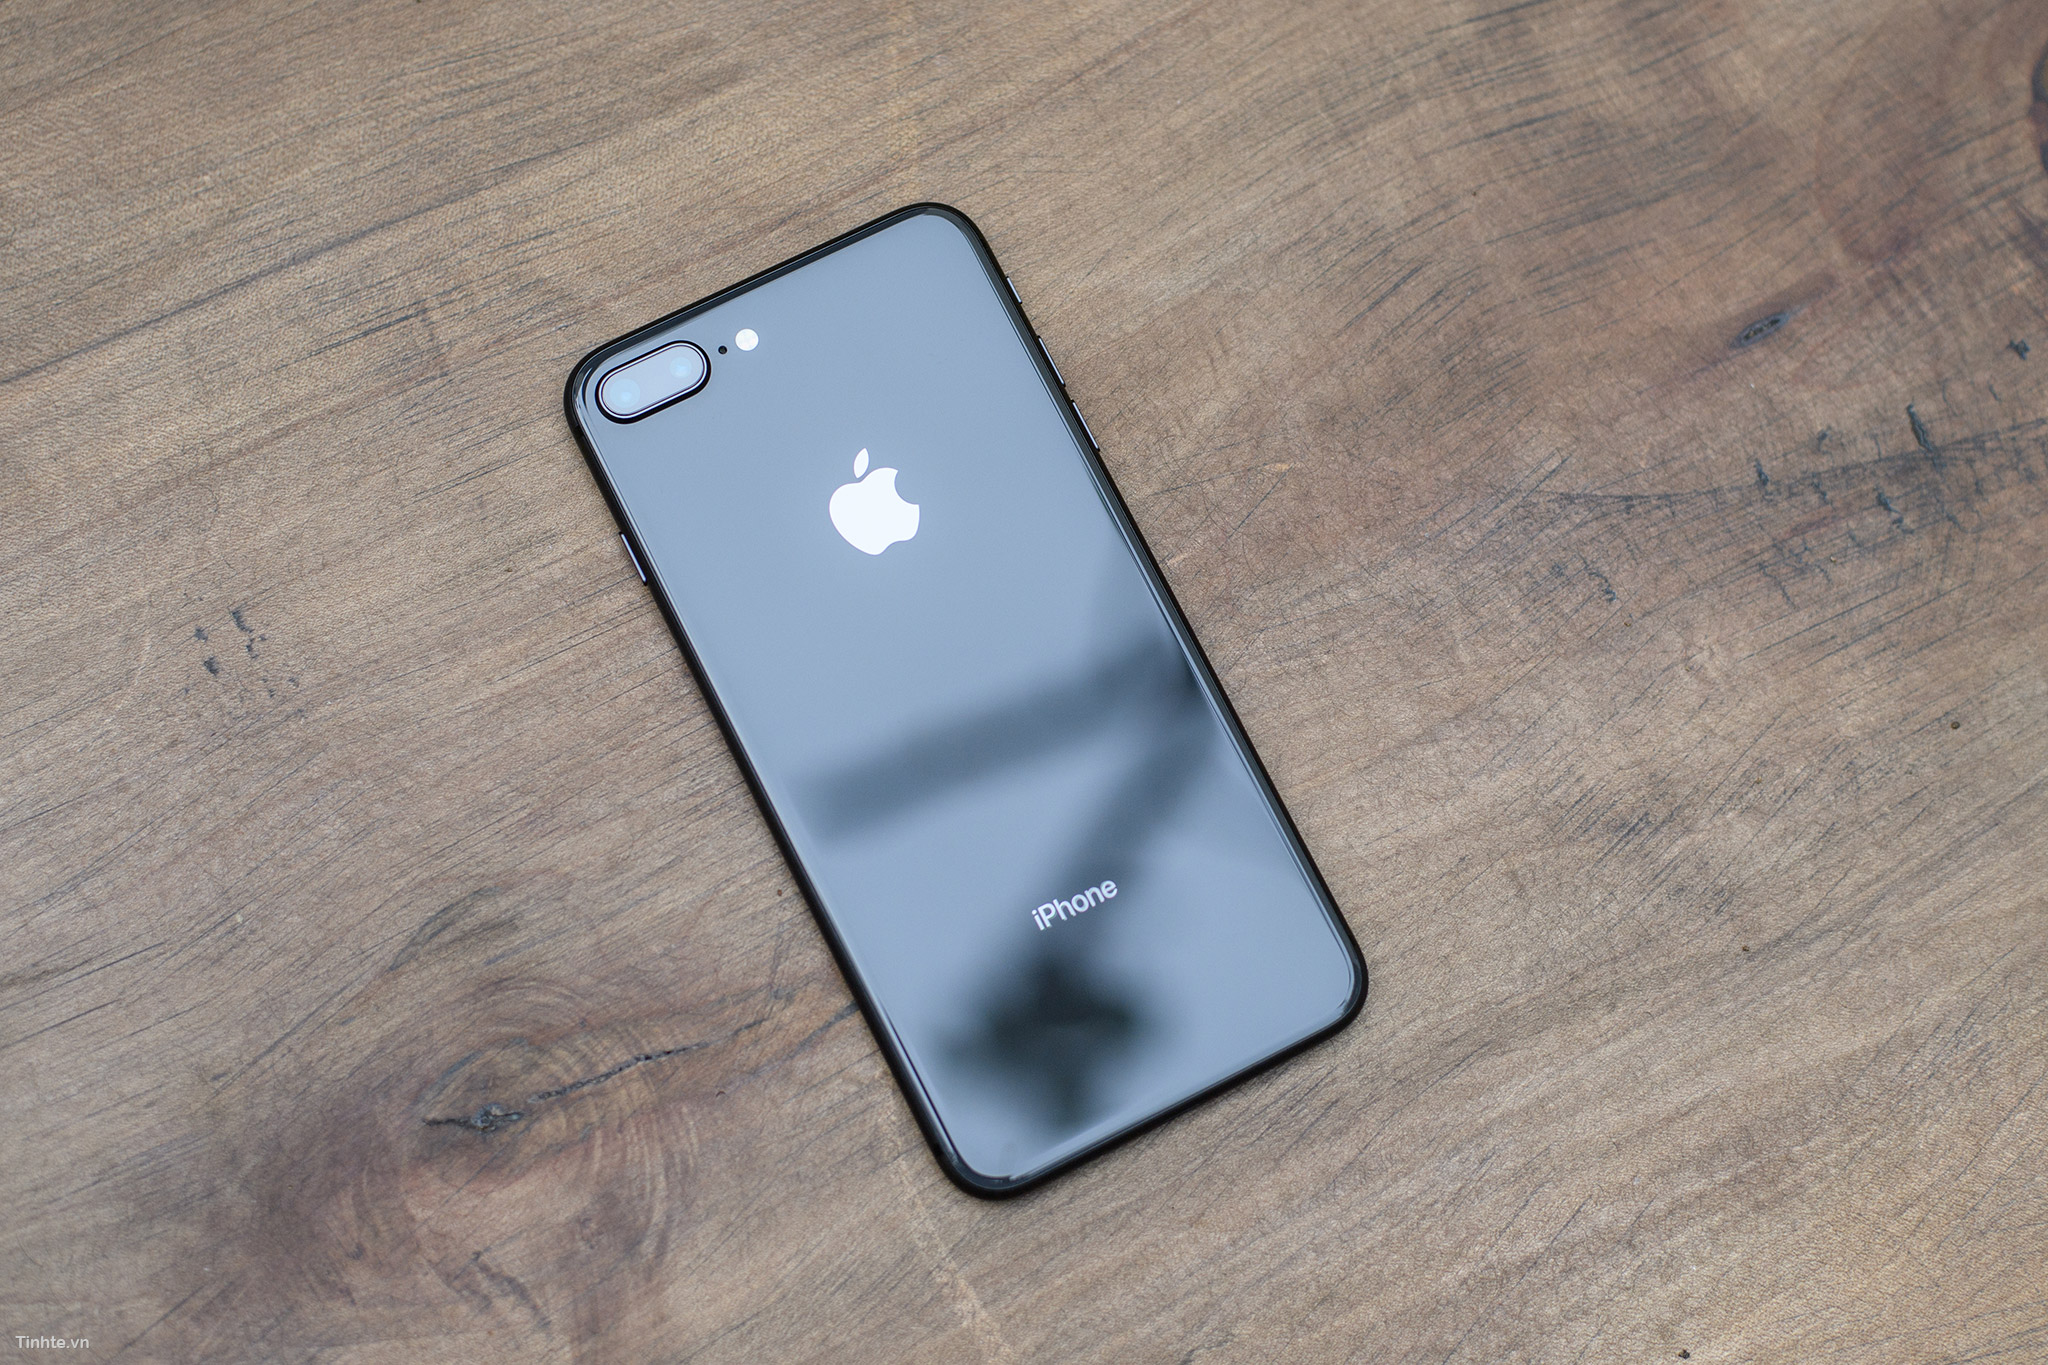 Màu sắc Space Gray của iPhone 8 thật ấn tượng! Nó mang đến một cảm giác đẳng cấp và sang trọng cho chiếc điện thoại của bạn. Hãy xem ảnh để tận hưởng sự đẹp mắt này!